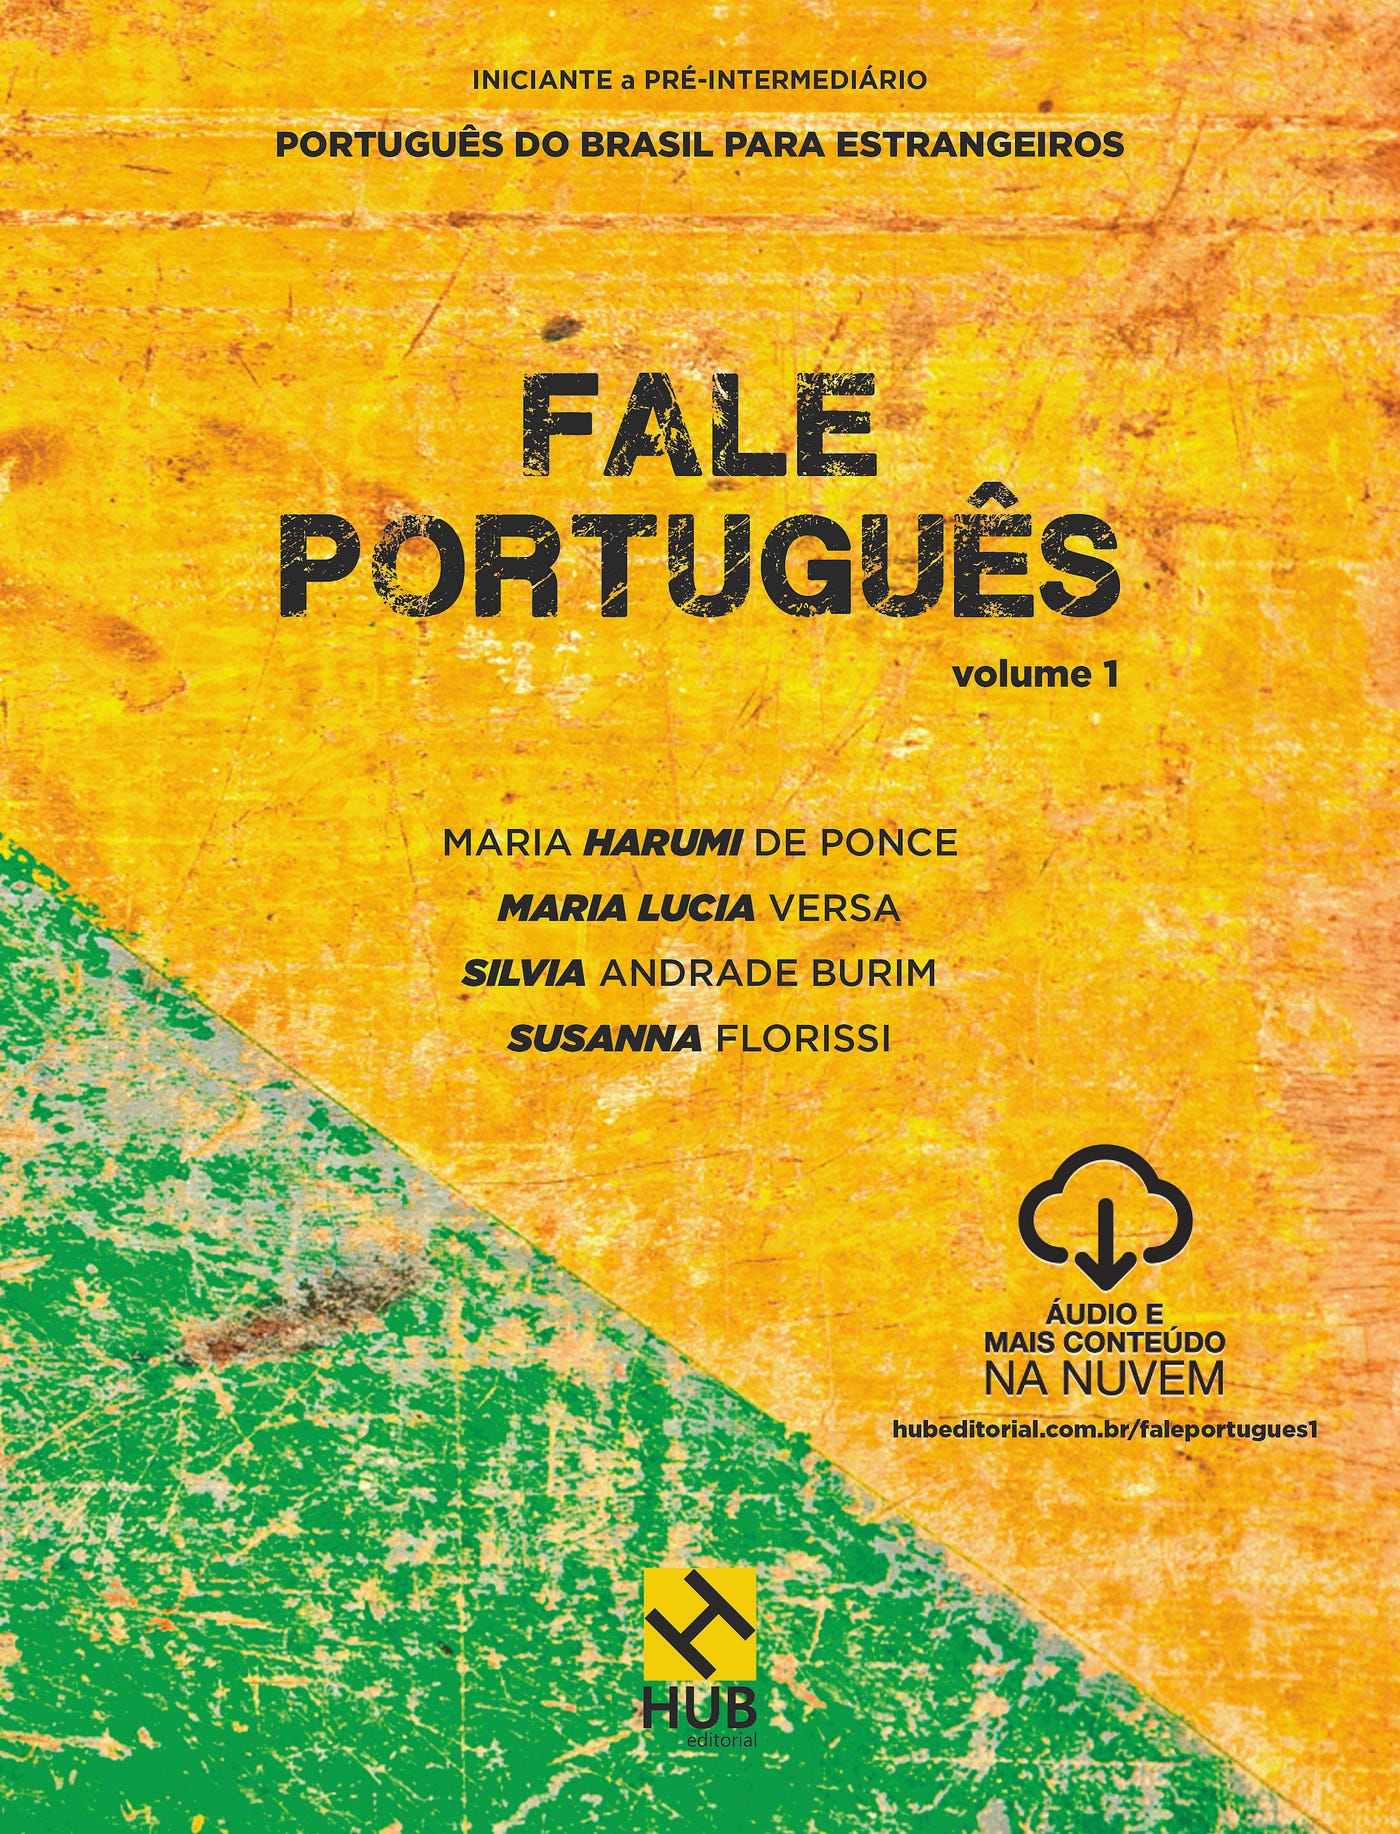 ENSINANDO PORTUGUÊS A ESTRANGEIROS — Introdução | by Susanna Florissi |  Medium